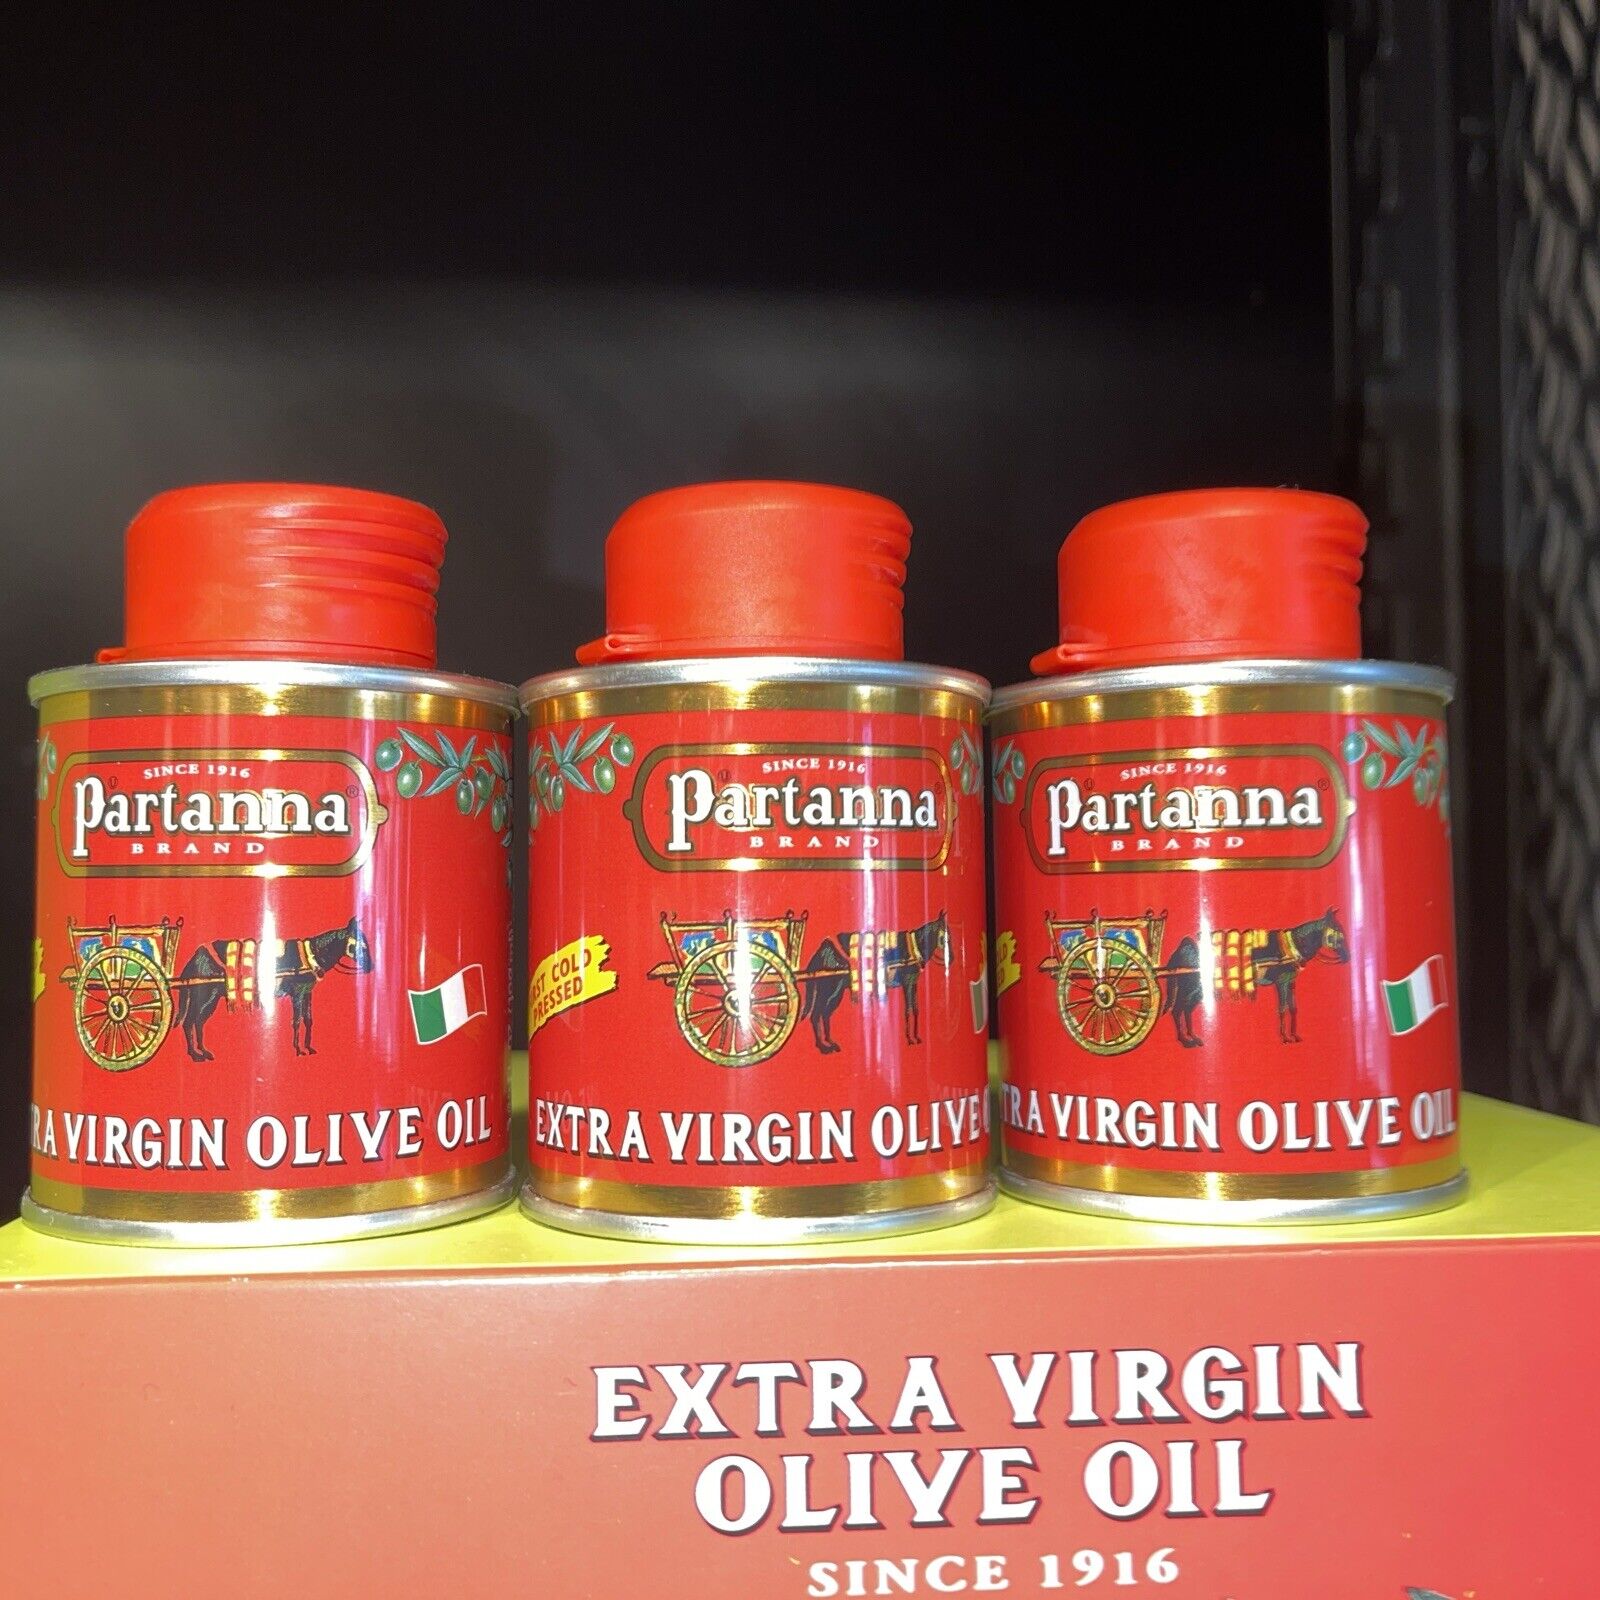 Starbucks Partanna Olive Oil 3.38 Oz. New Product LOT OF THREE 